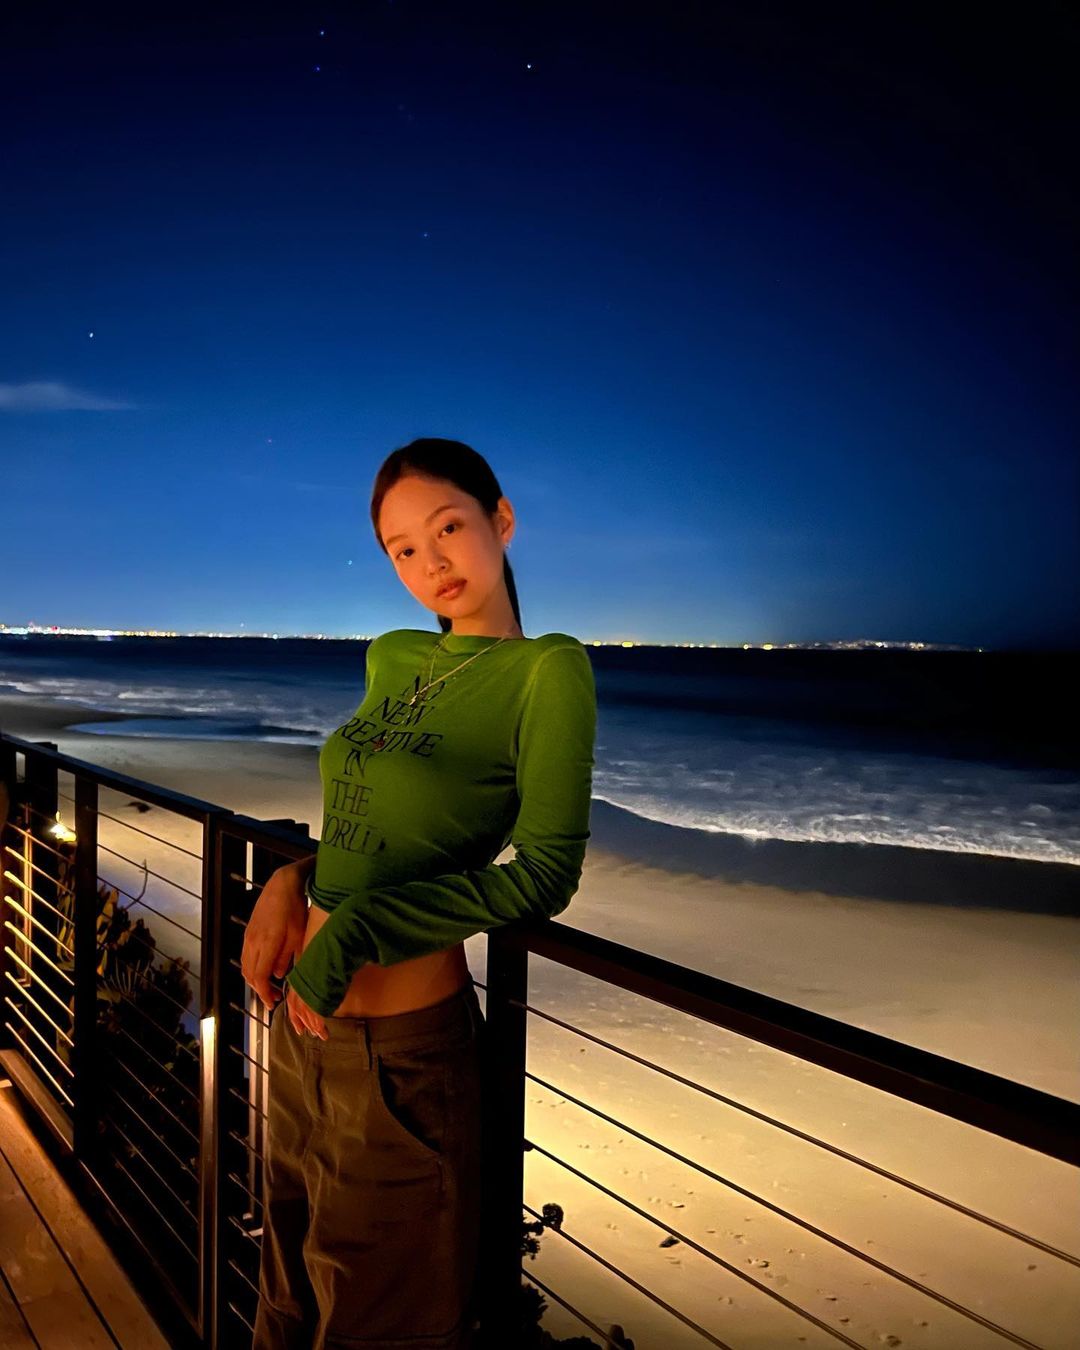 BLACKPINKジェニー「絵のような夜の海＋マネキン・ボディ」…完ぺきな写真